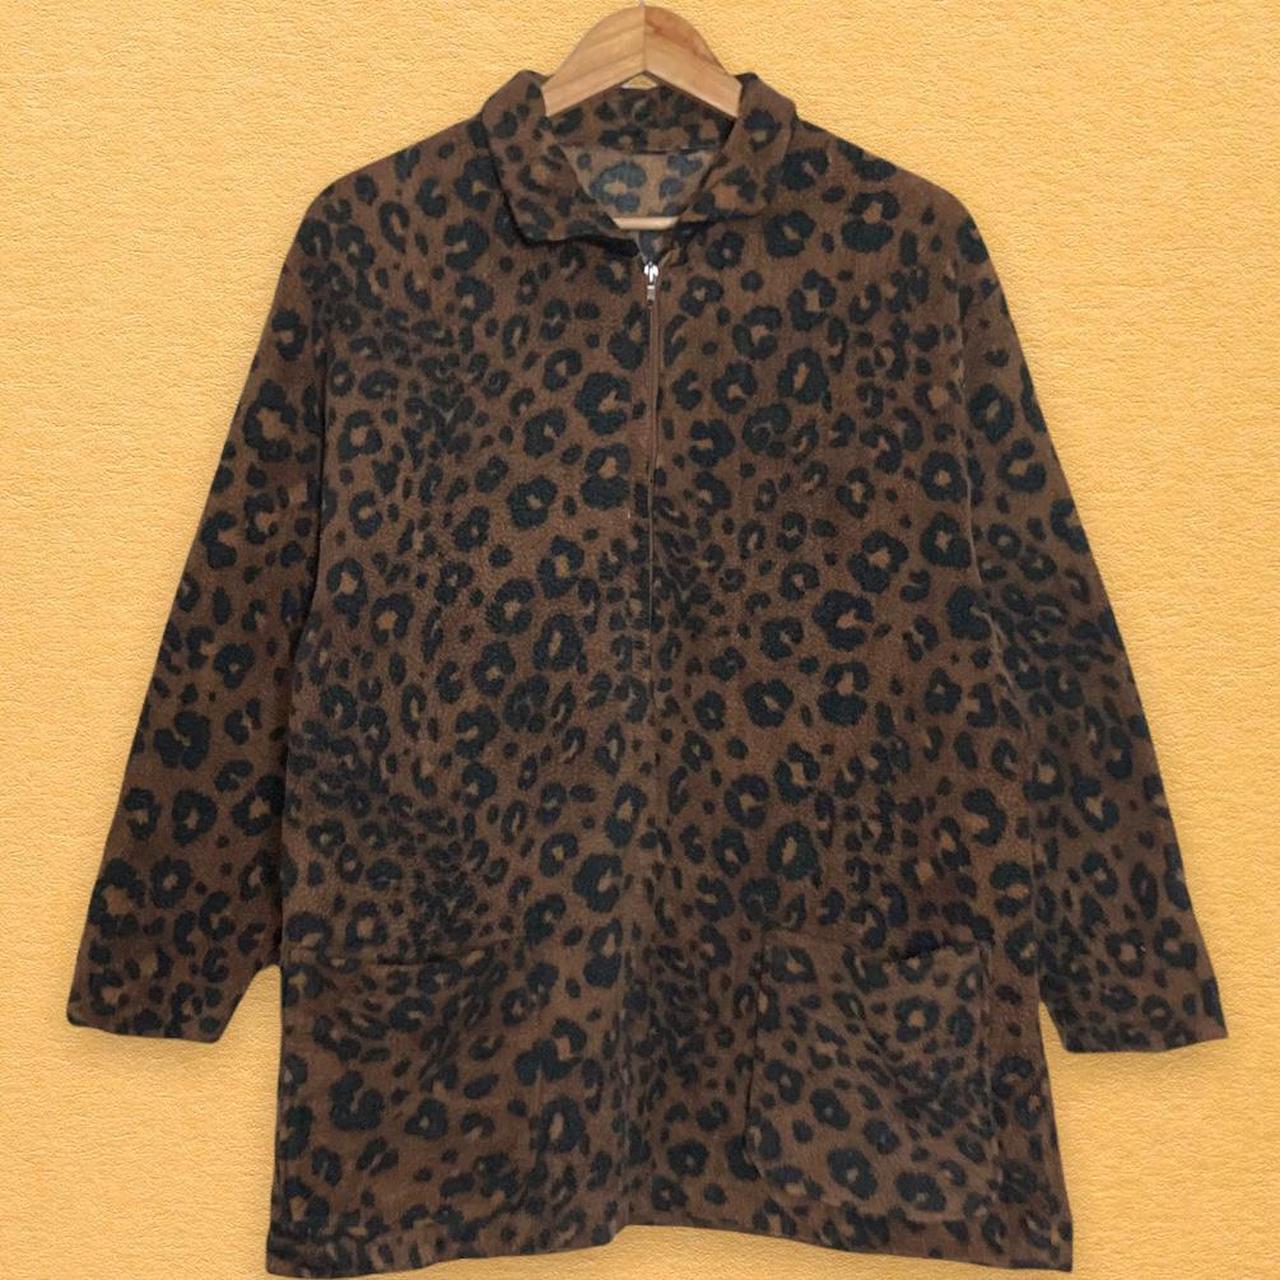 Vintage Leopard Print Fleece Large Brown... - Depop